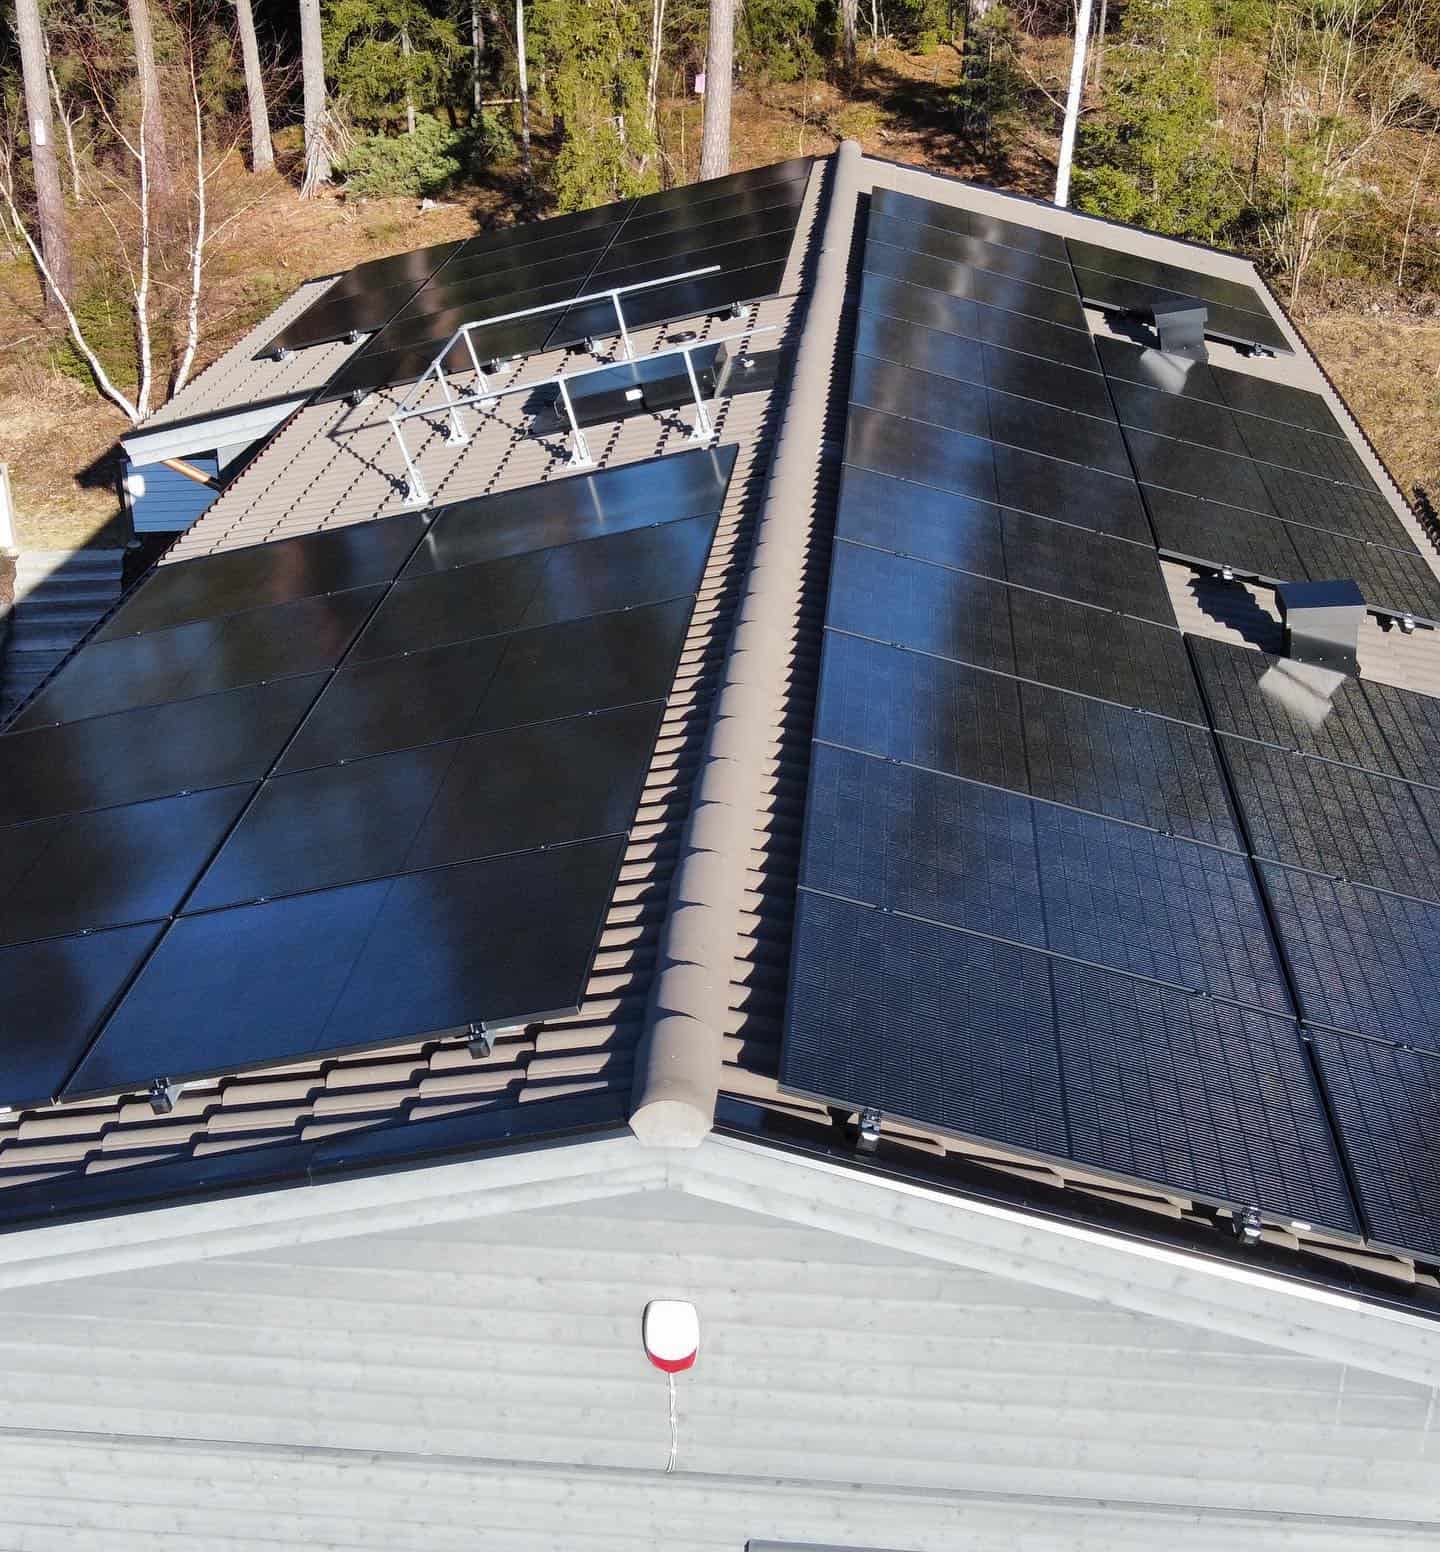 Referensjobb "Vill du installera solceller på taket och spara el?" utfört av Takel Energy AB